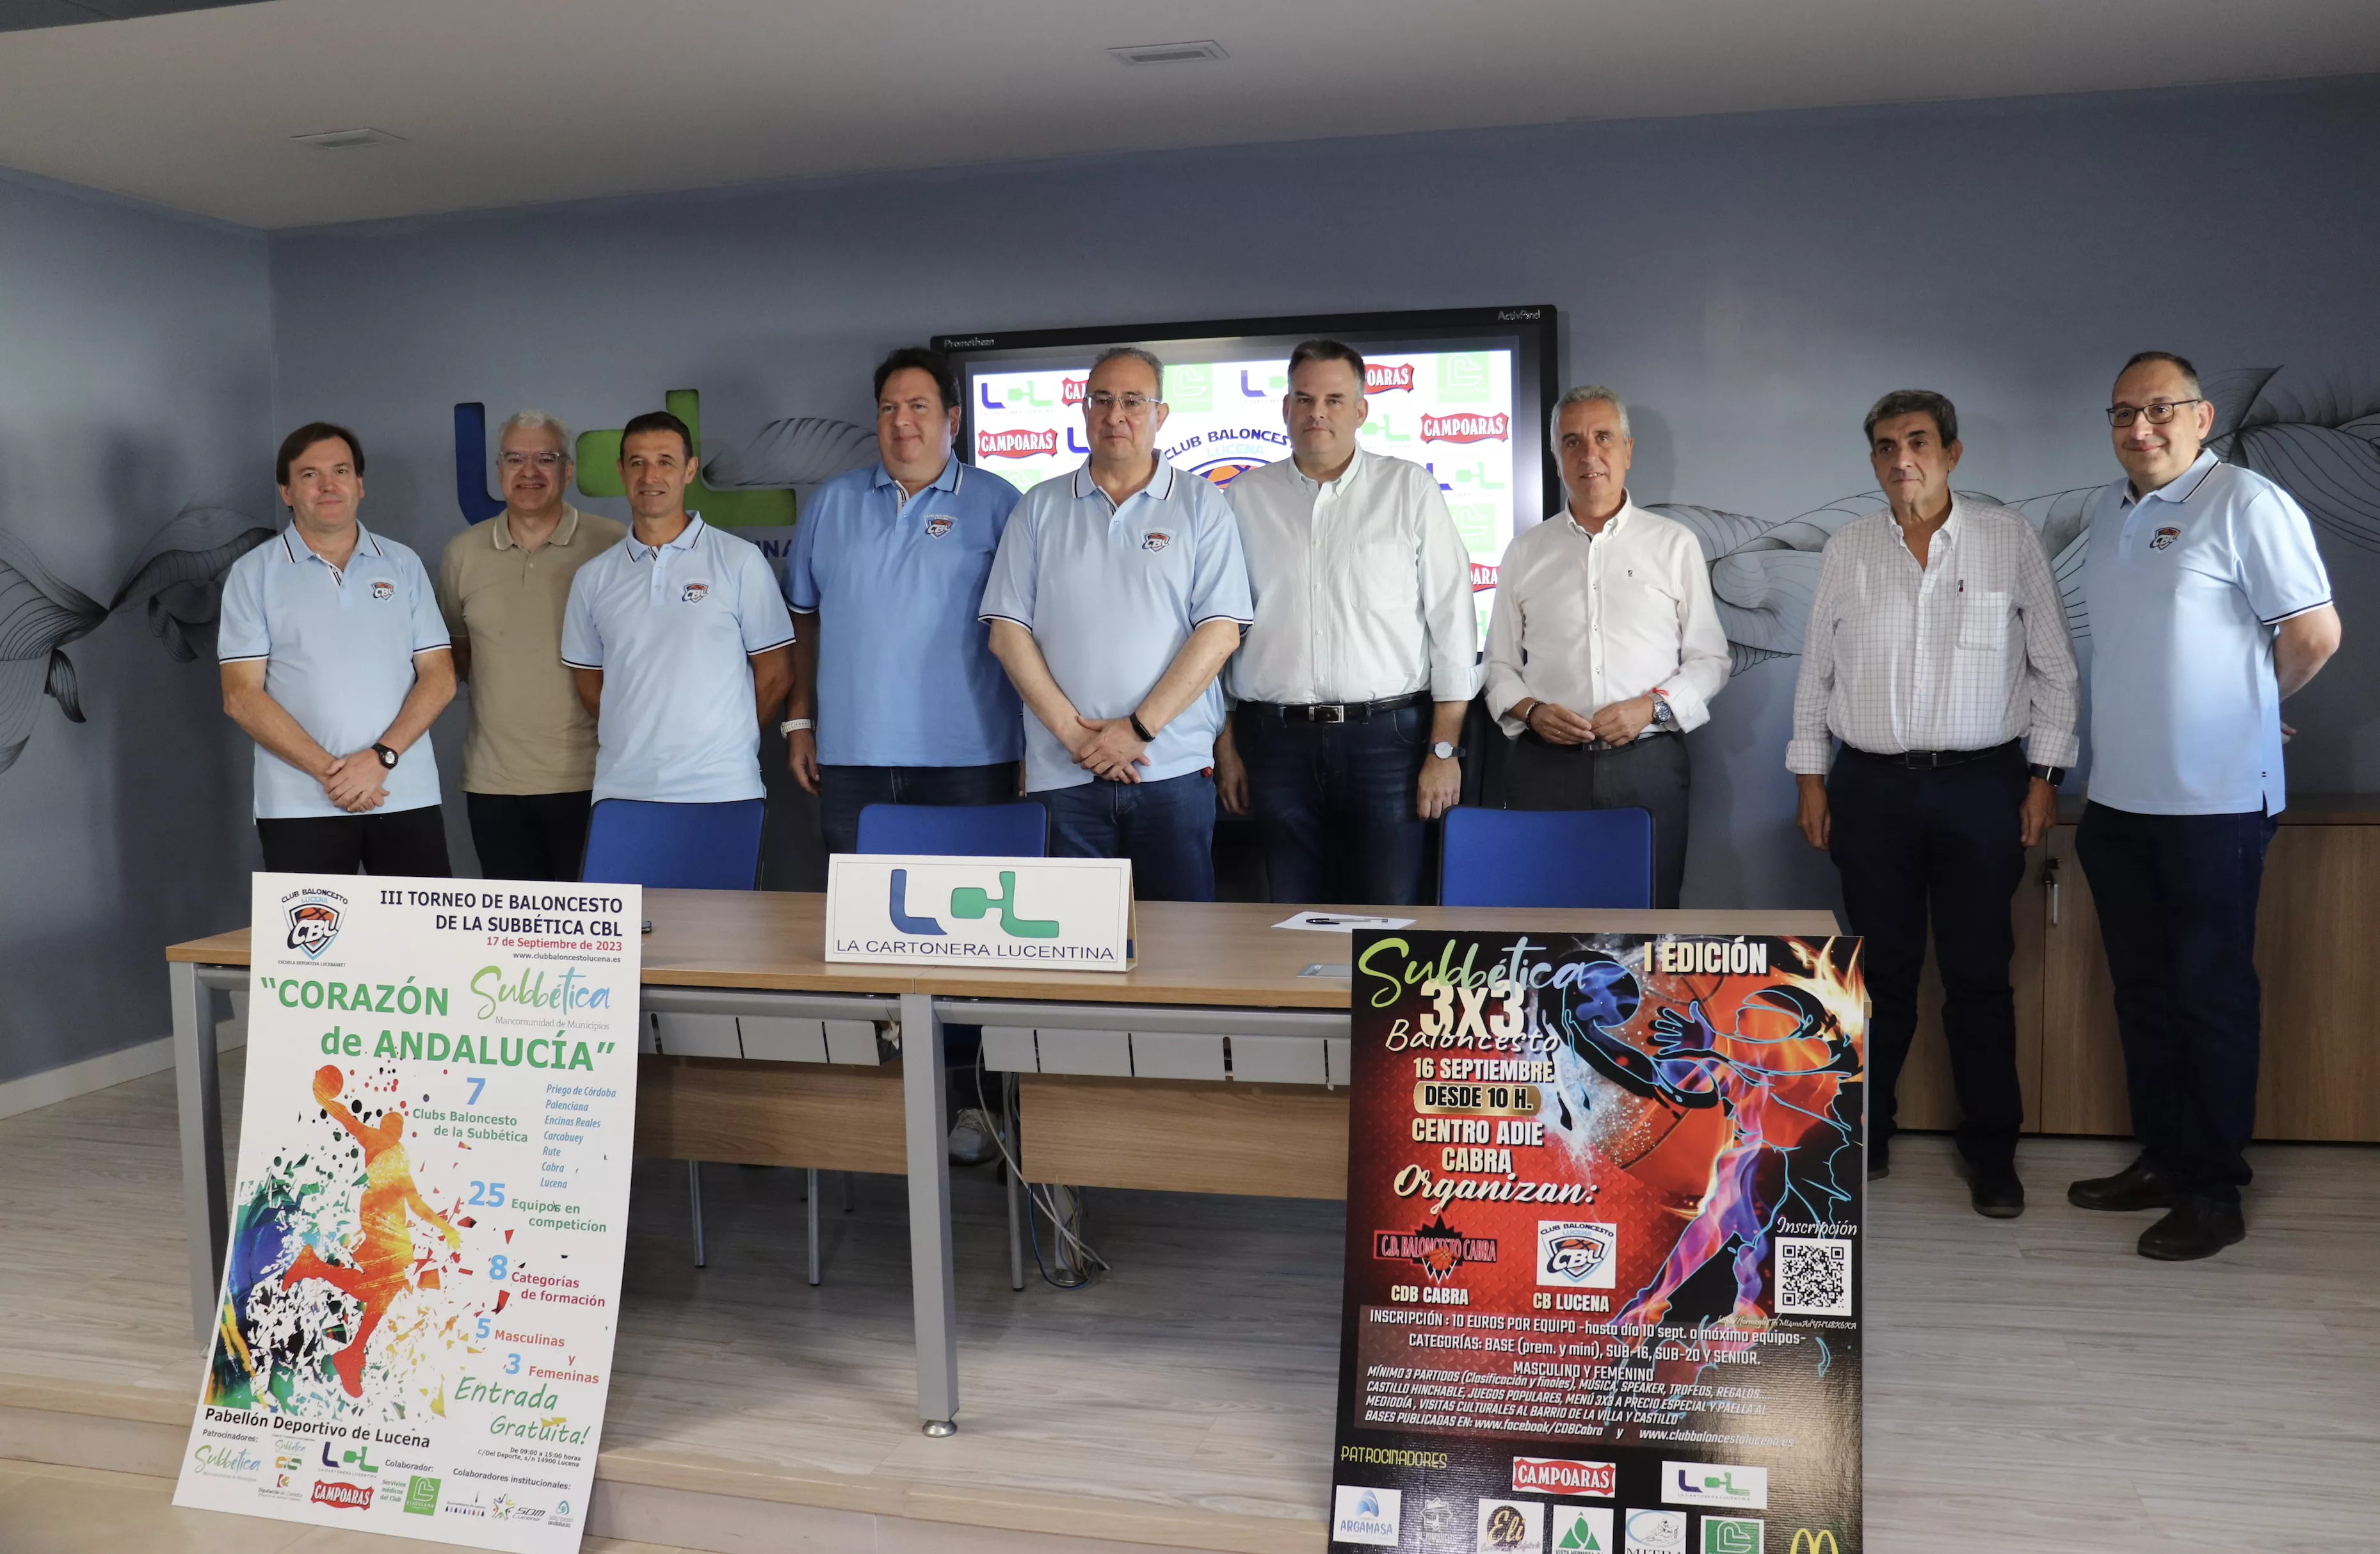 Presentación del torneo en las instalaciones de La Cartonera Lucentina